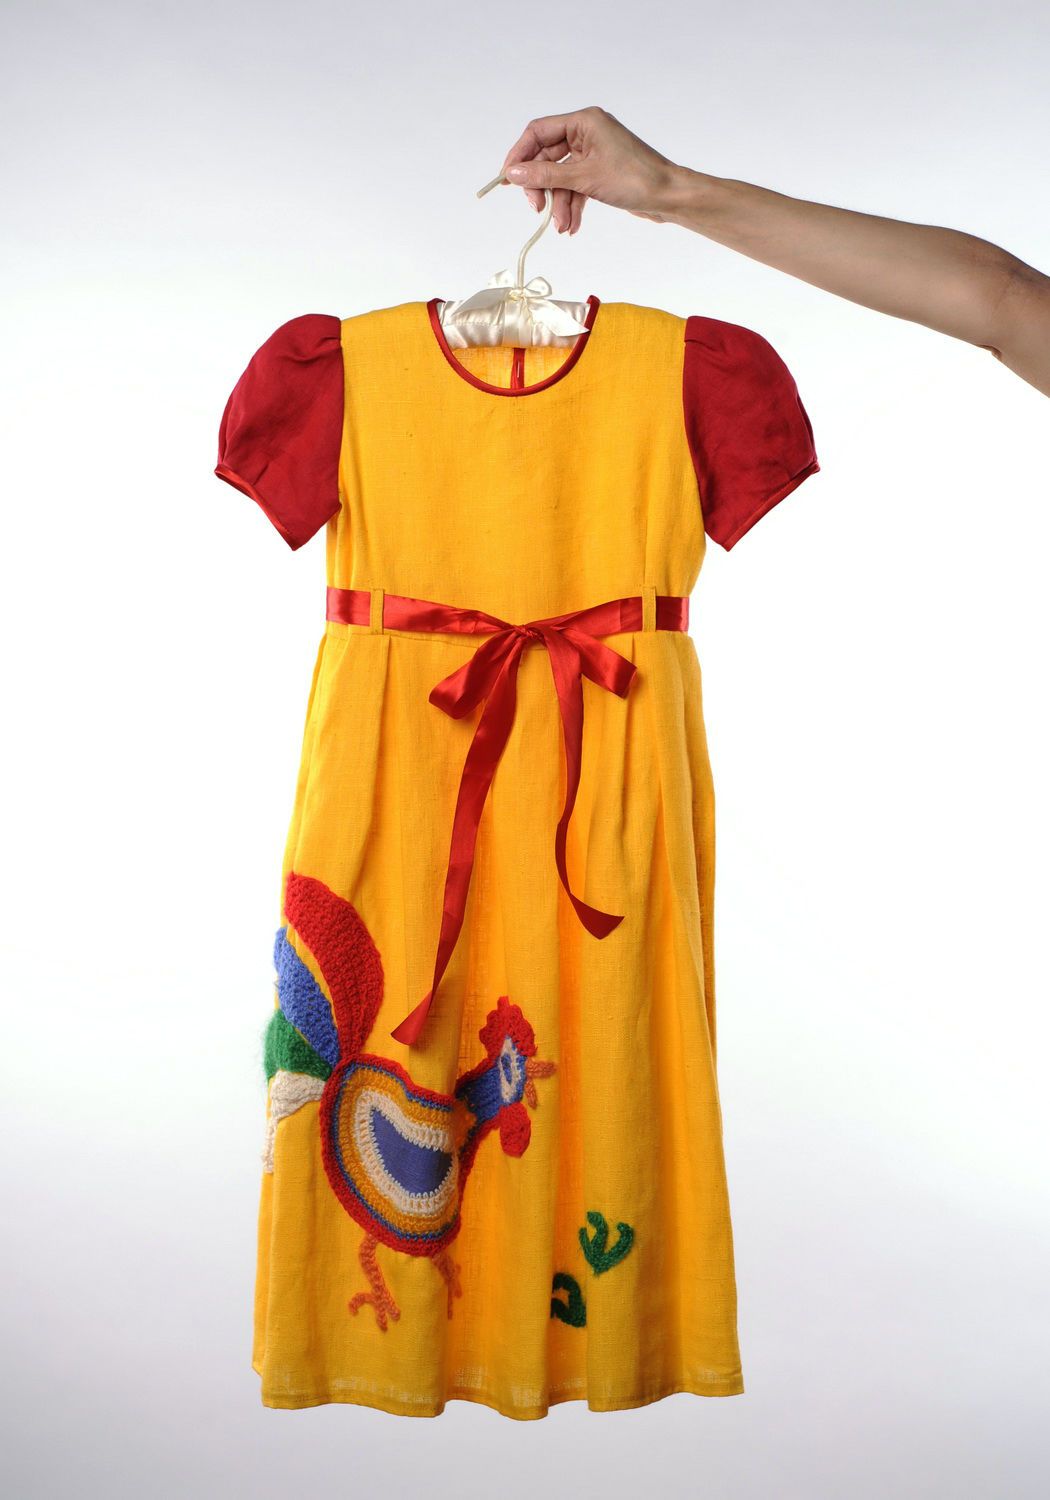 Kinder Kleider aus Lein mit gestickter Applikation foto 2